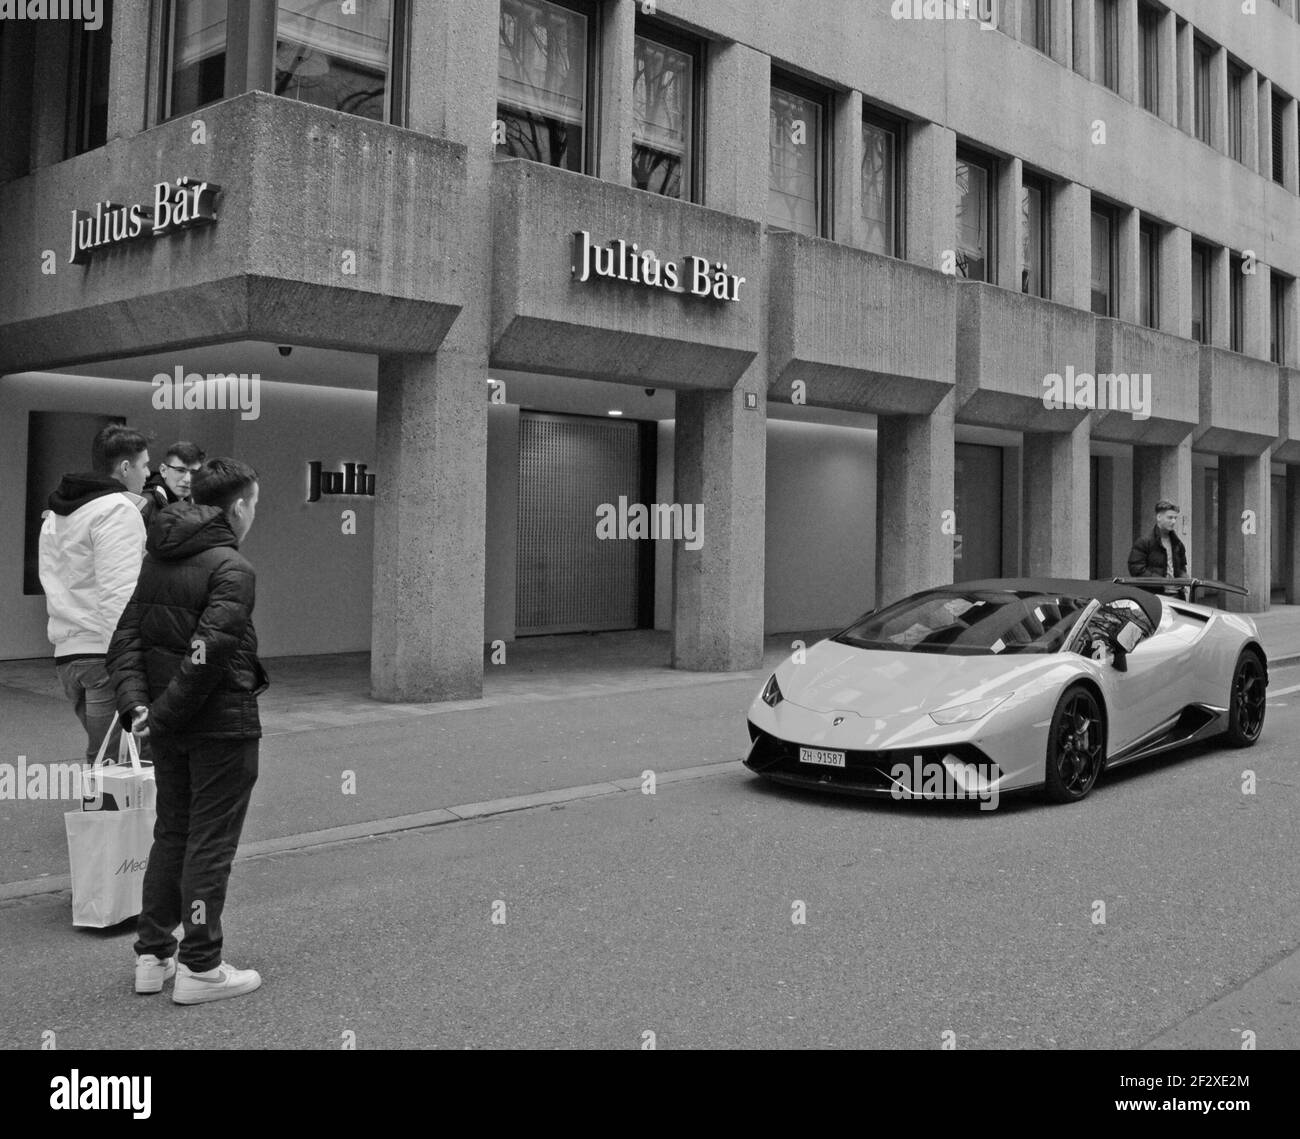 Suisse : une Lamborghini orange devant la banque Julius Bär à Bahnhofsstrasse, dans la ville de Zurich Banque D'Images